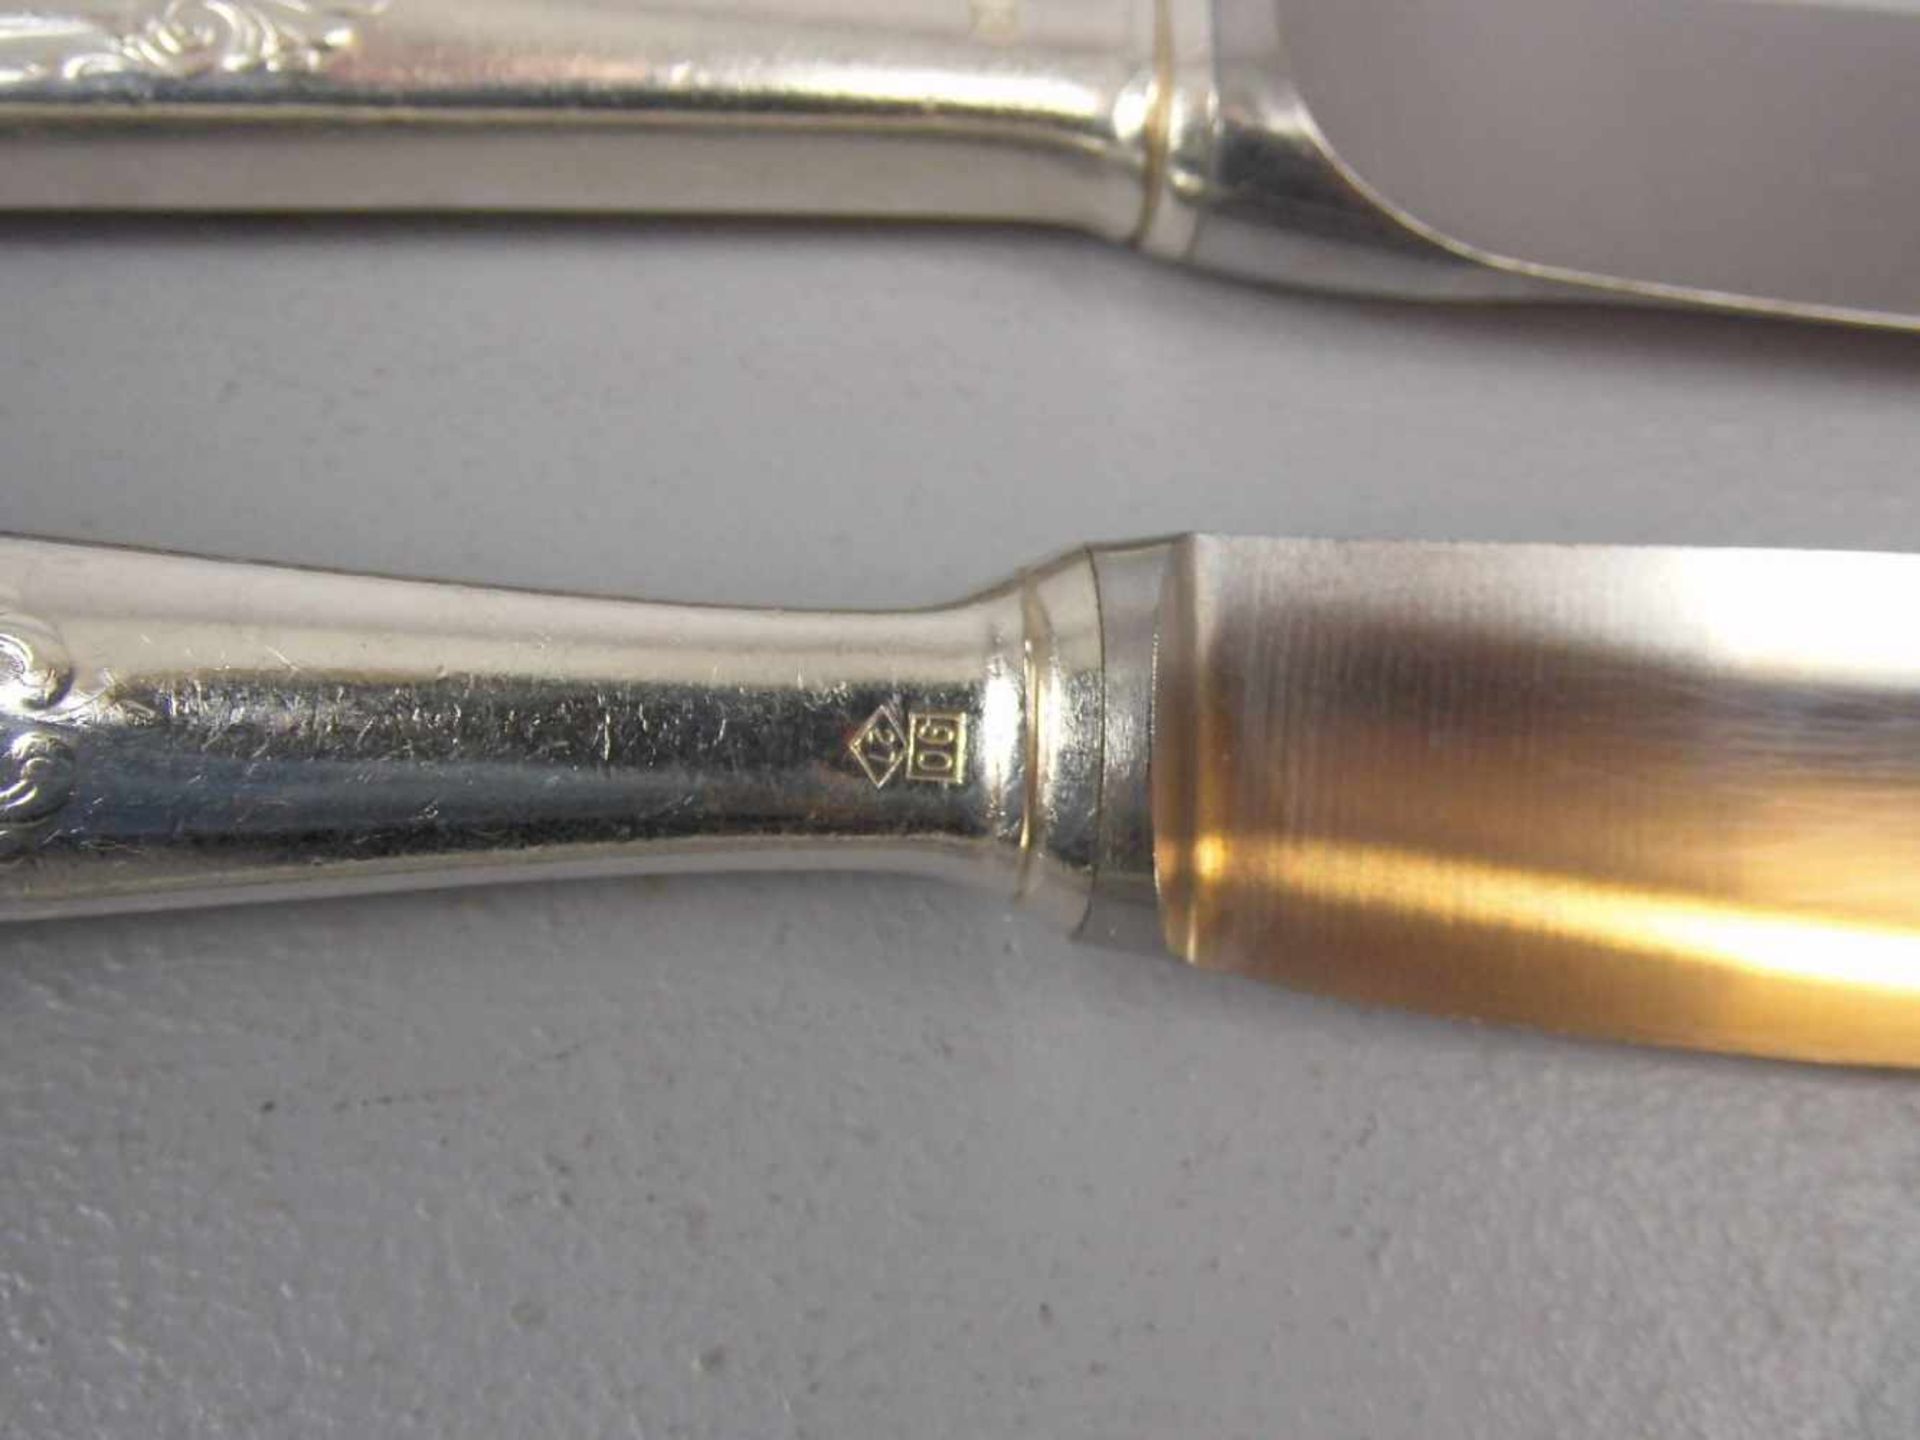 WMF - RESTBESTECK / cutlery, versilbert / 90er Auflage, WMF - Württembergische Metallwarenfabrik / - Image 5 of 5